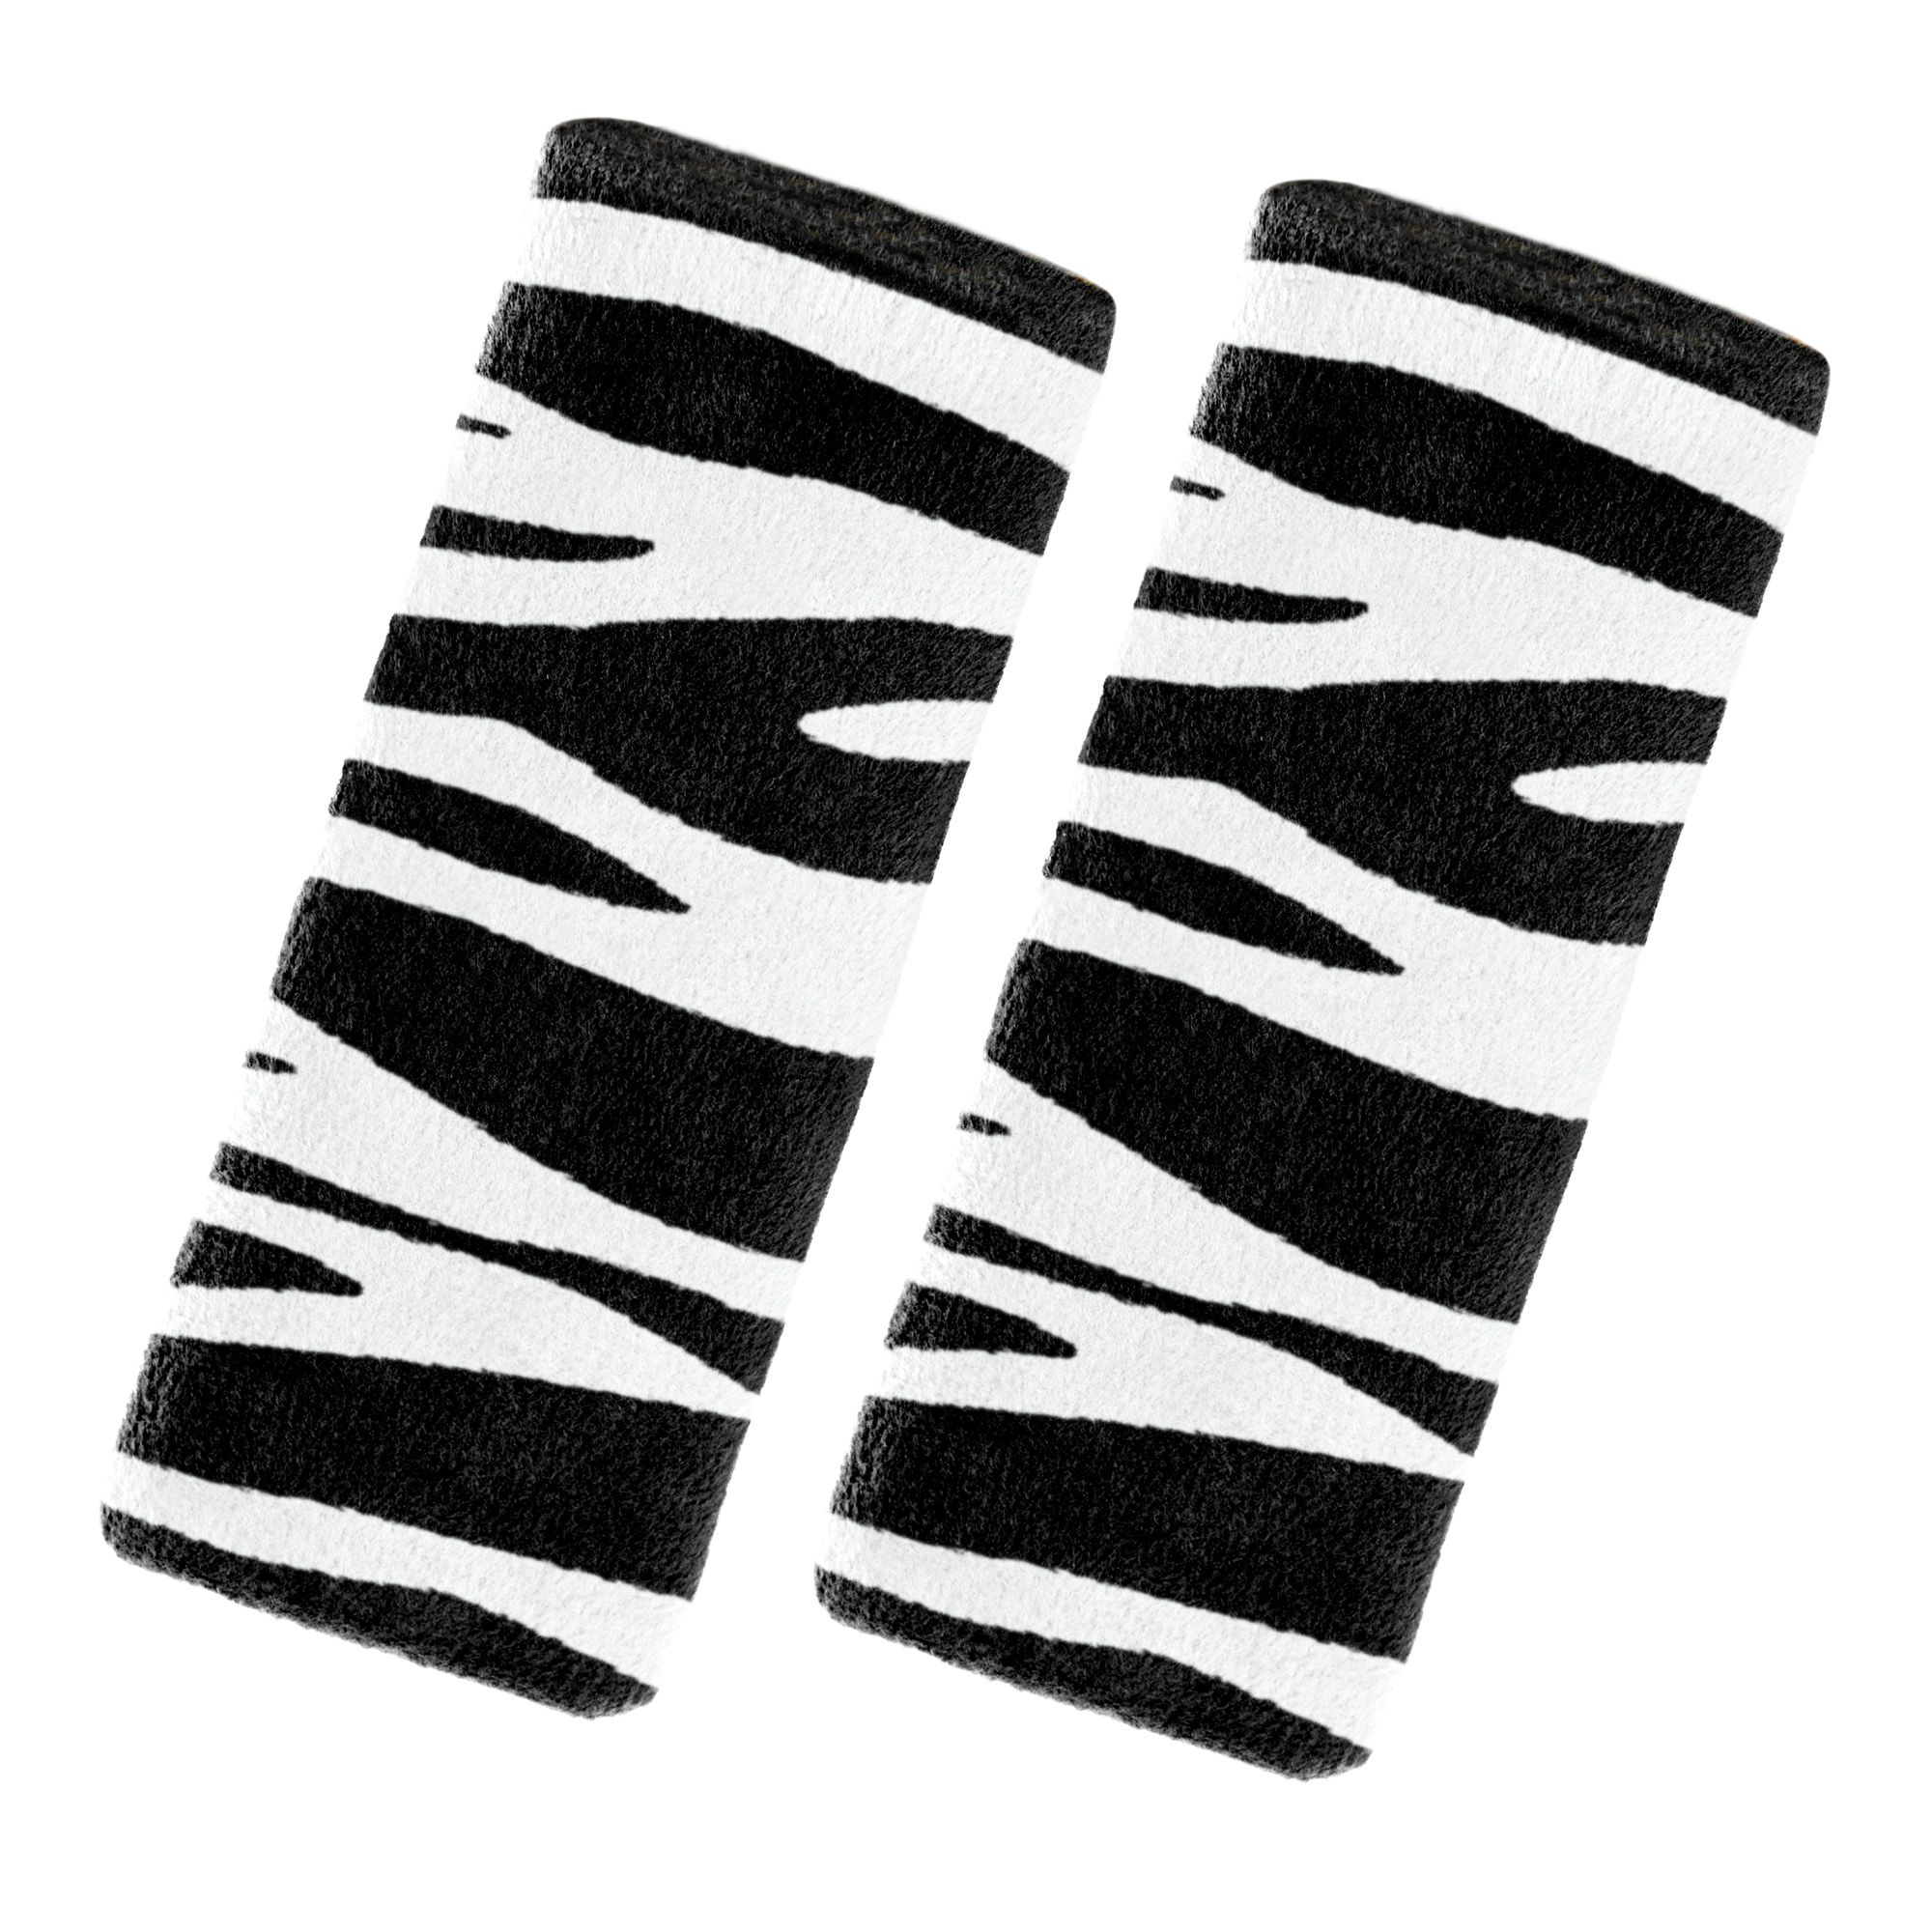 Προστατευτικά μαξιλαράκια για ζώνες Ben-Bat Zebra